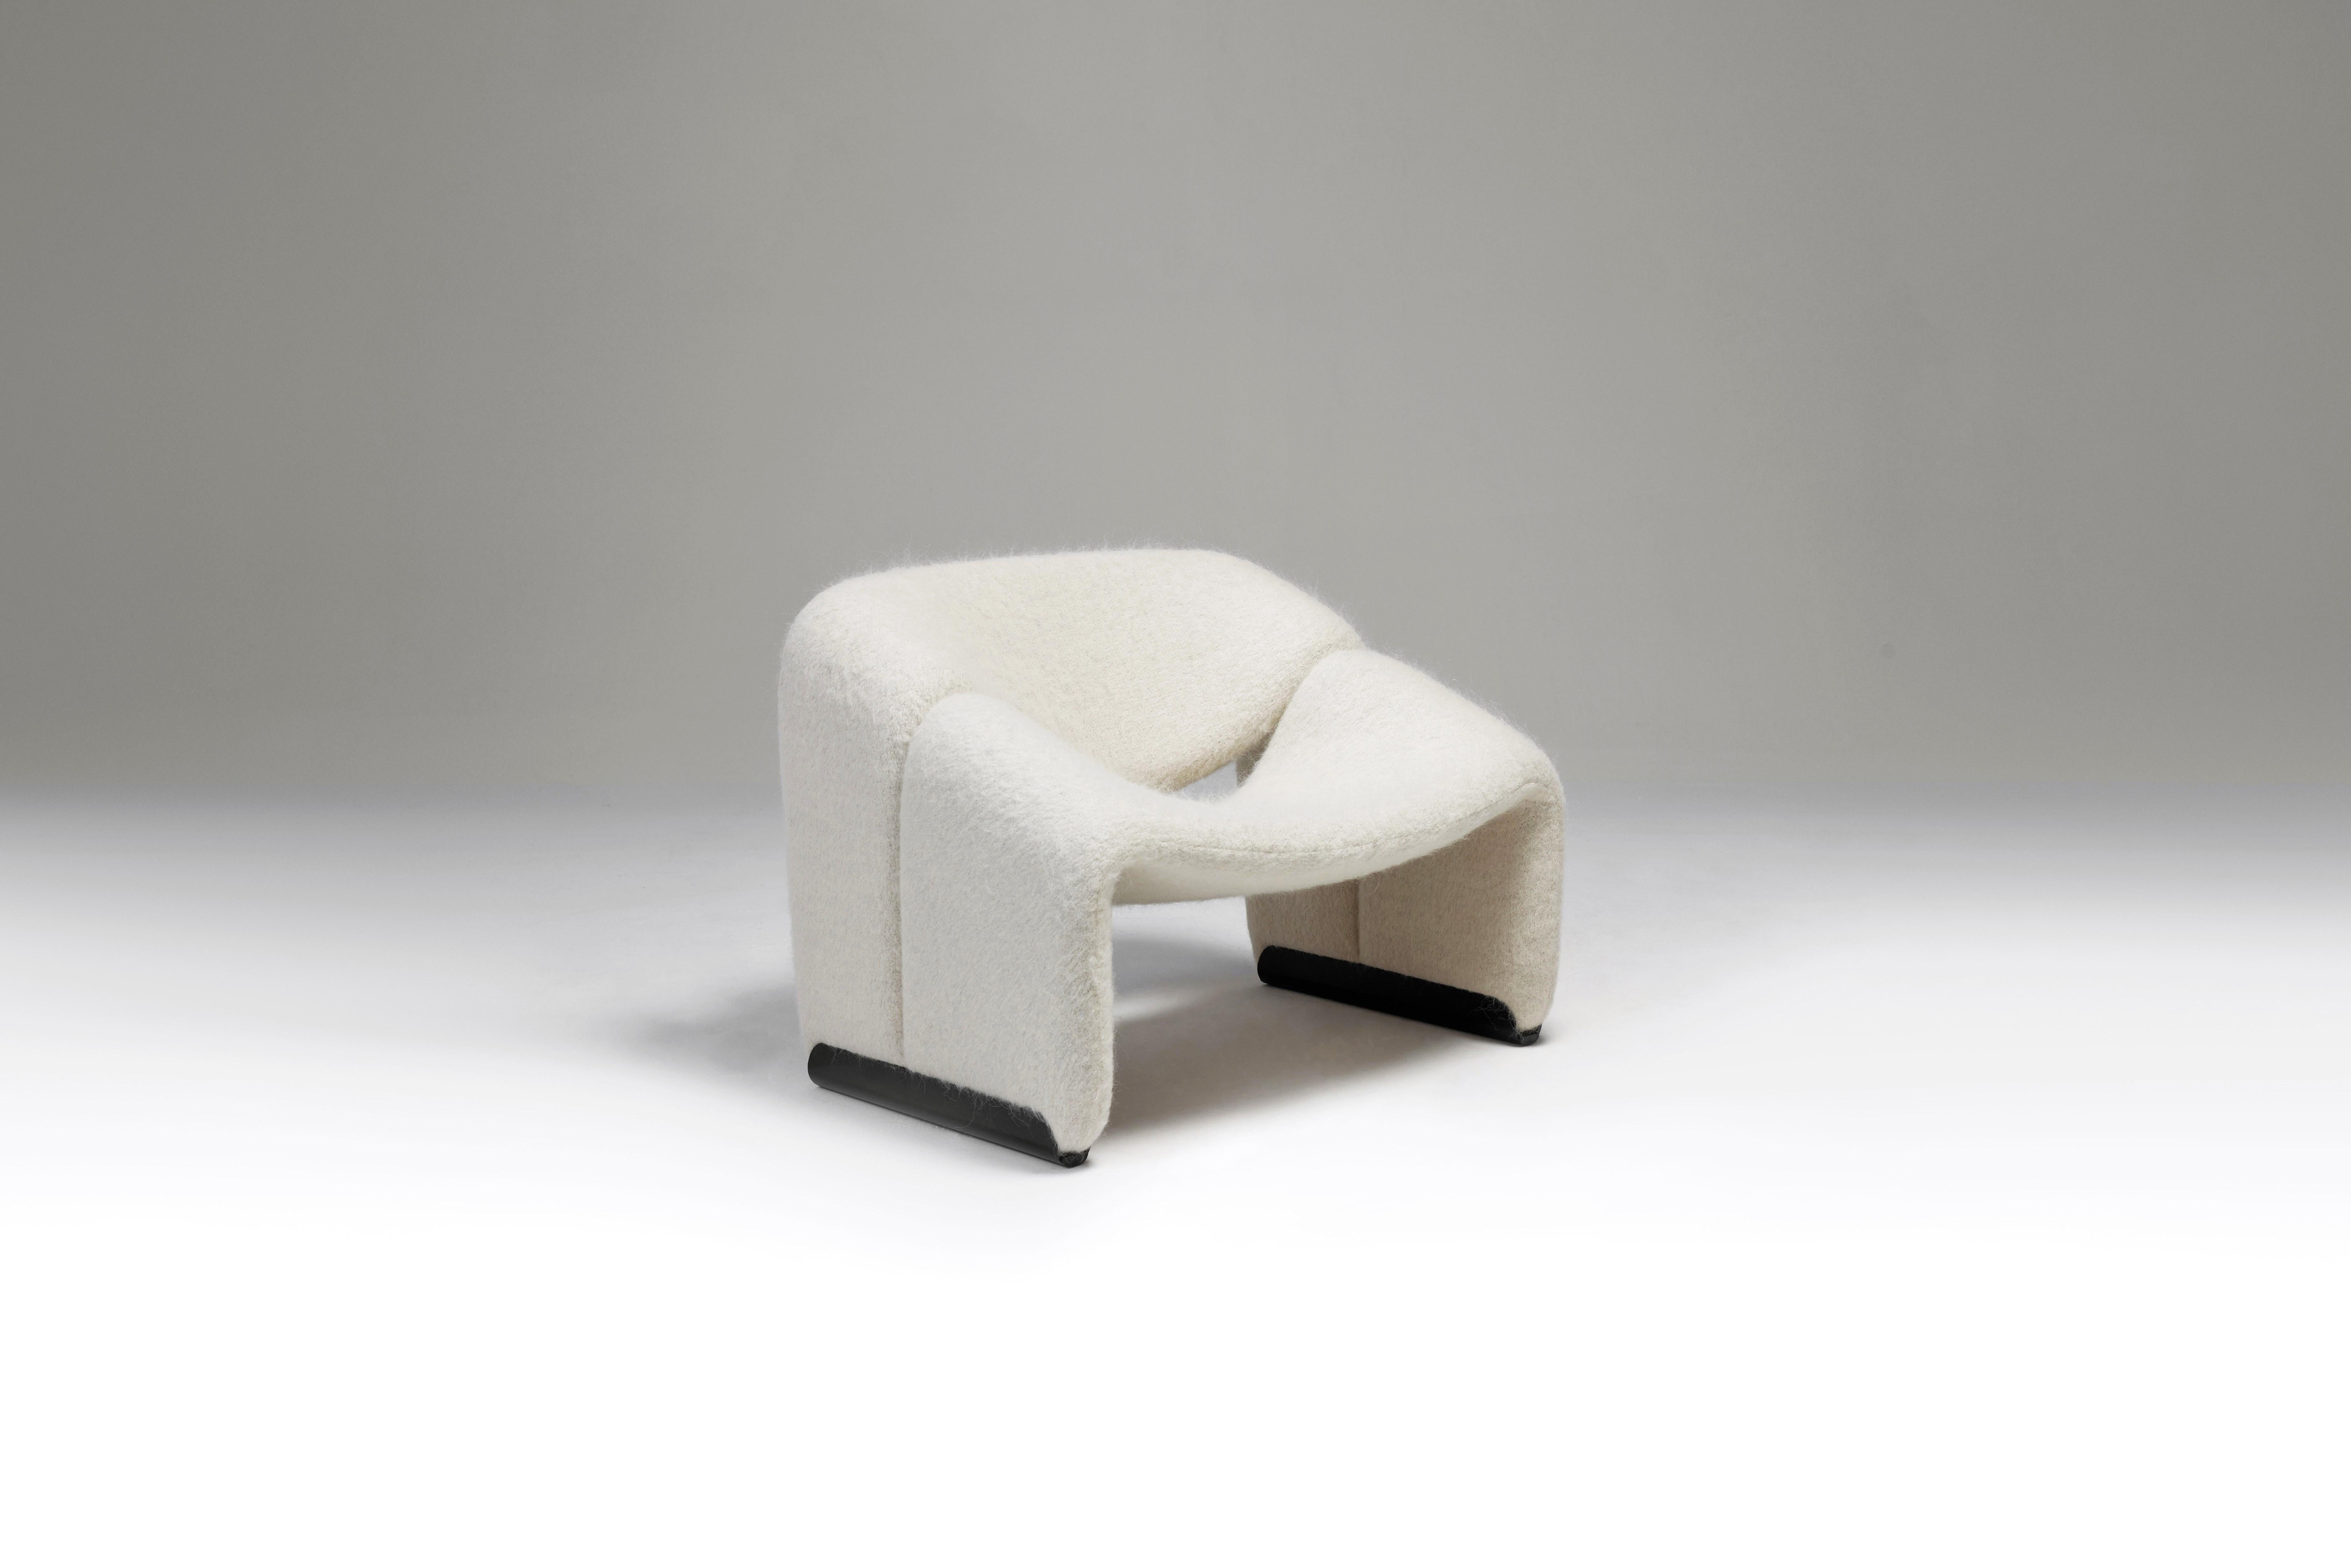 Fauteuil fantastique F598, également appelé Groovy, de Pierre Paulin pour Artifort, Pays-Bas 1972. Ce fauteuil sculptural a été récemment retapissé avec un tissu de haute qualité en laine et alpaga de Pierre Frey provenant de Paris, France.
 Comme